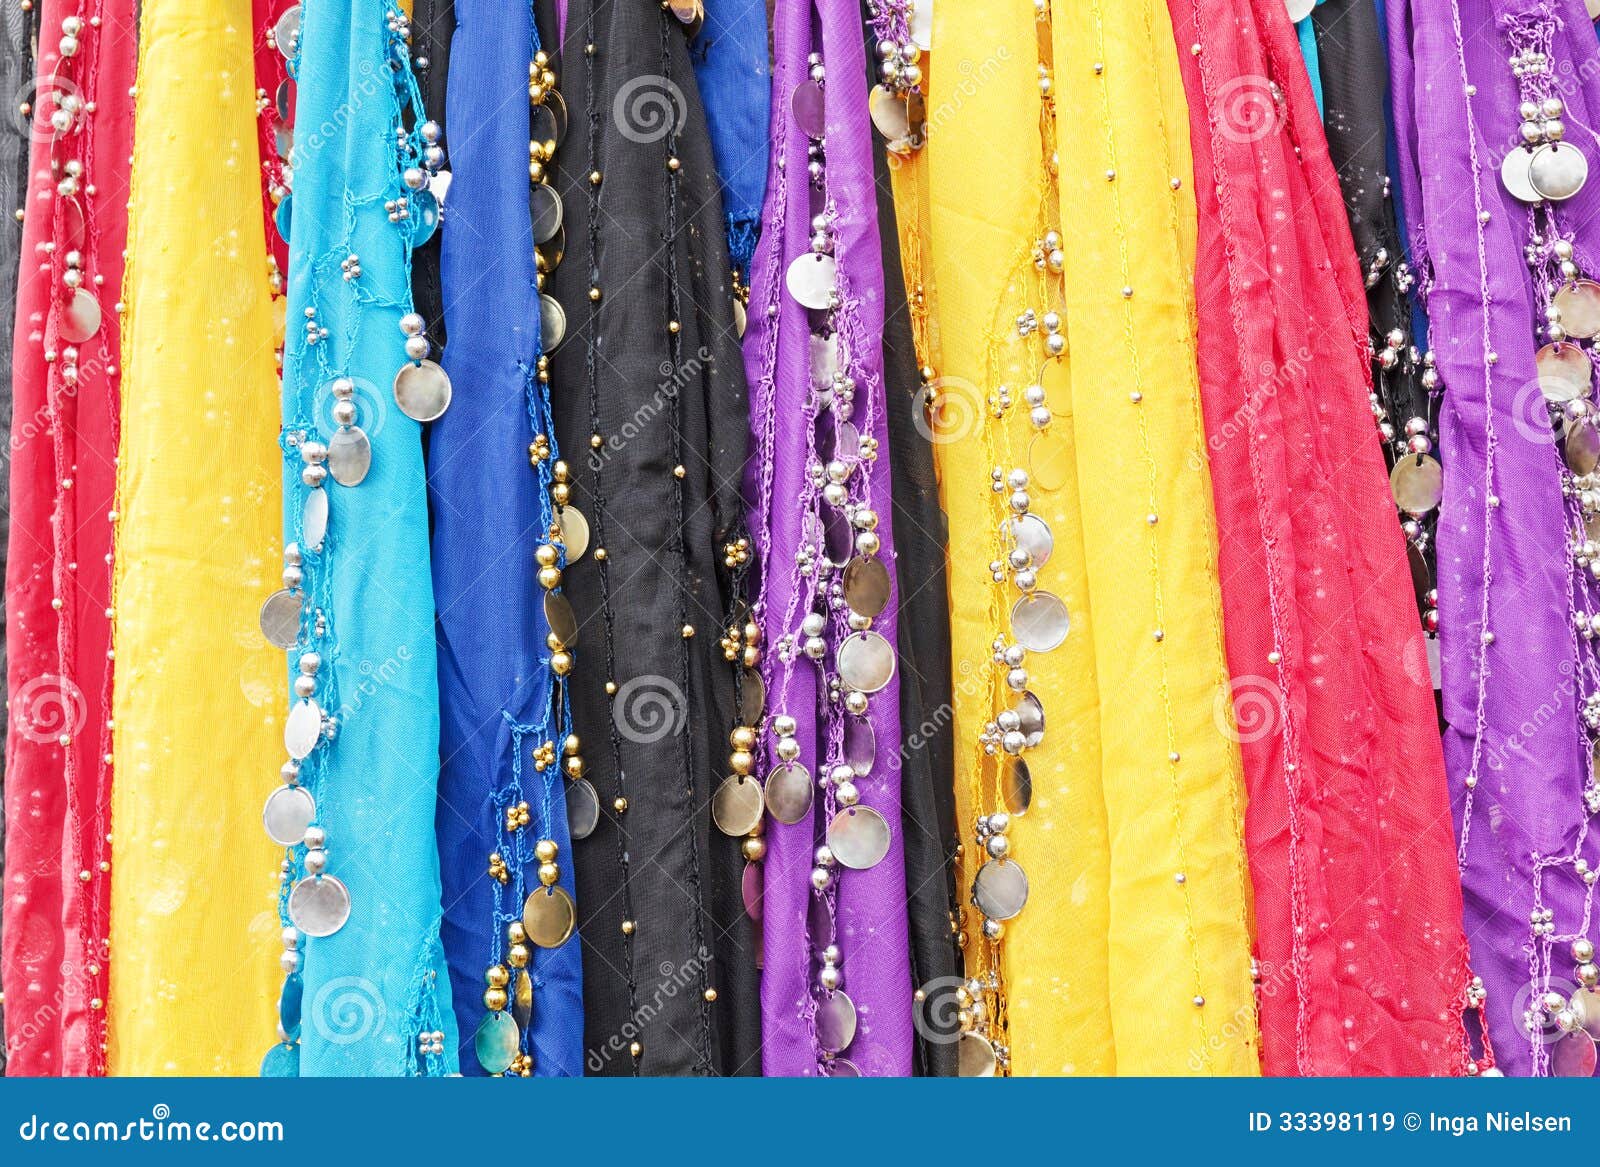 Tissus orientaux colorés avec des pièces de monnaie en métal et perles utilisées pour la danse du ventre.